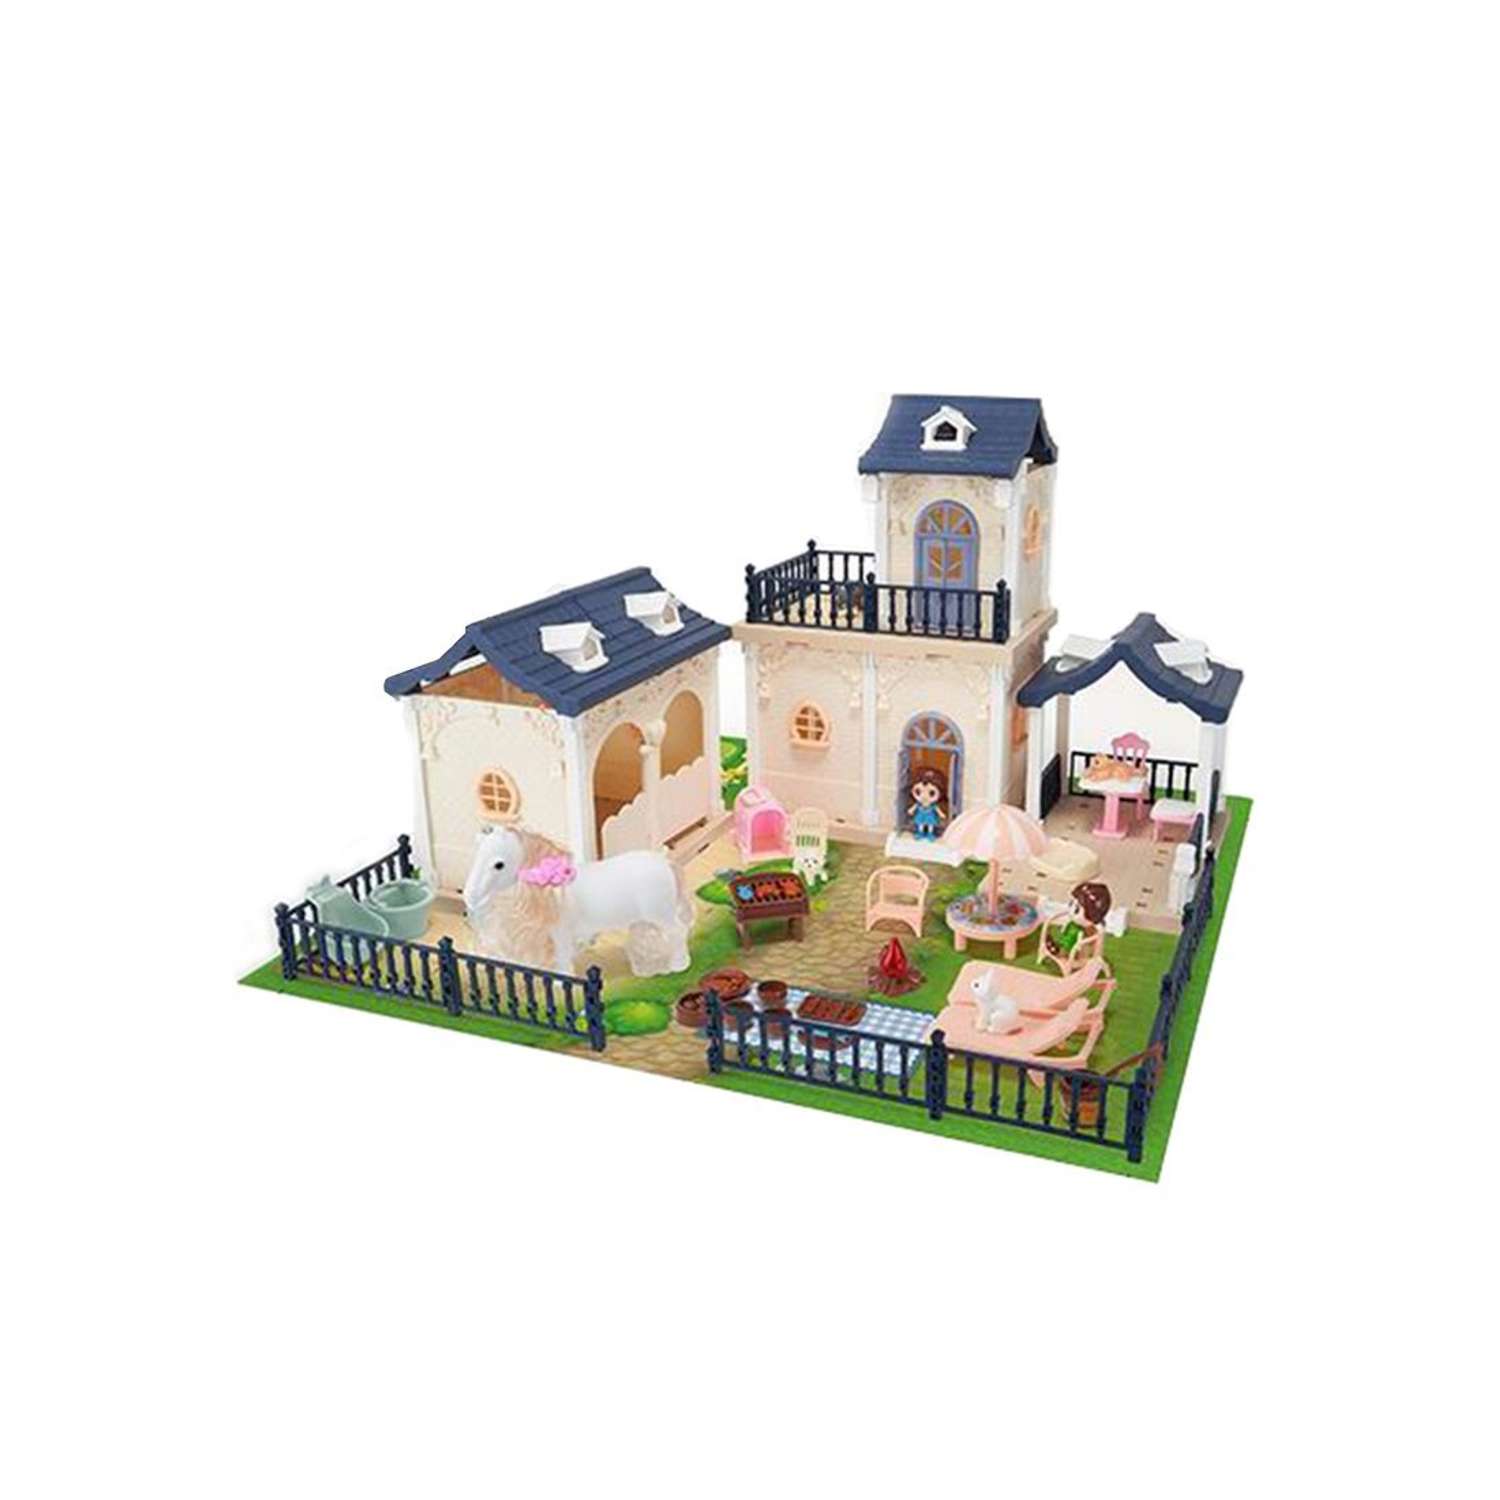 Кукольный домик Наша Игрушка игровой набор Семейная усадьба в комплекте детали 148 шт аксесс. 34 шт 646883 - фото 1